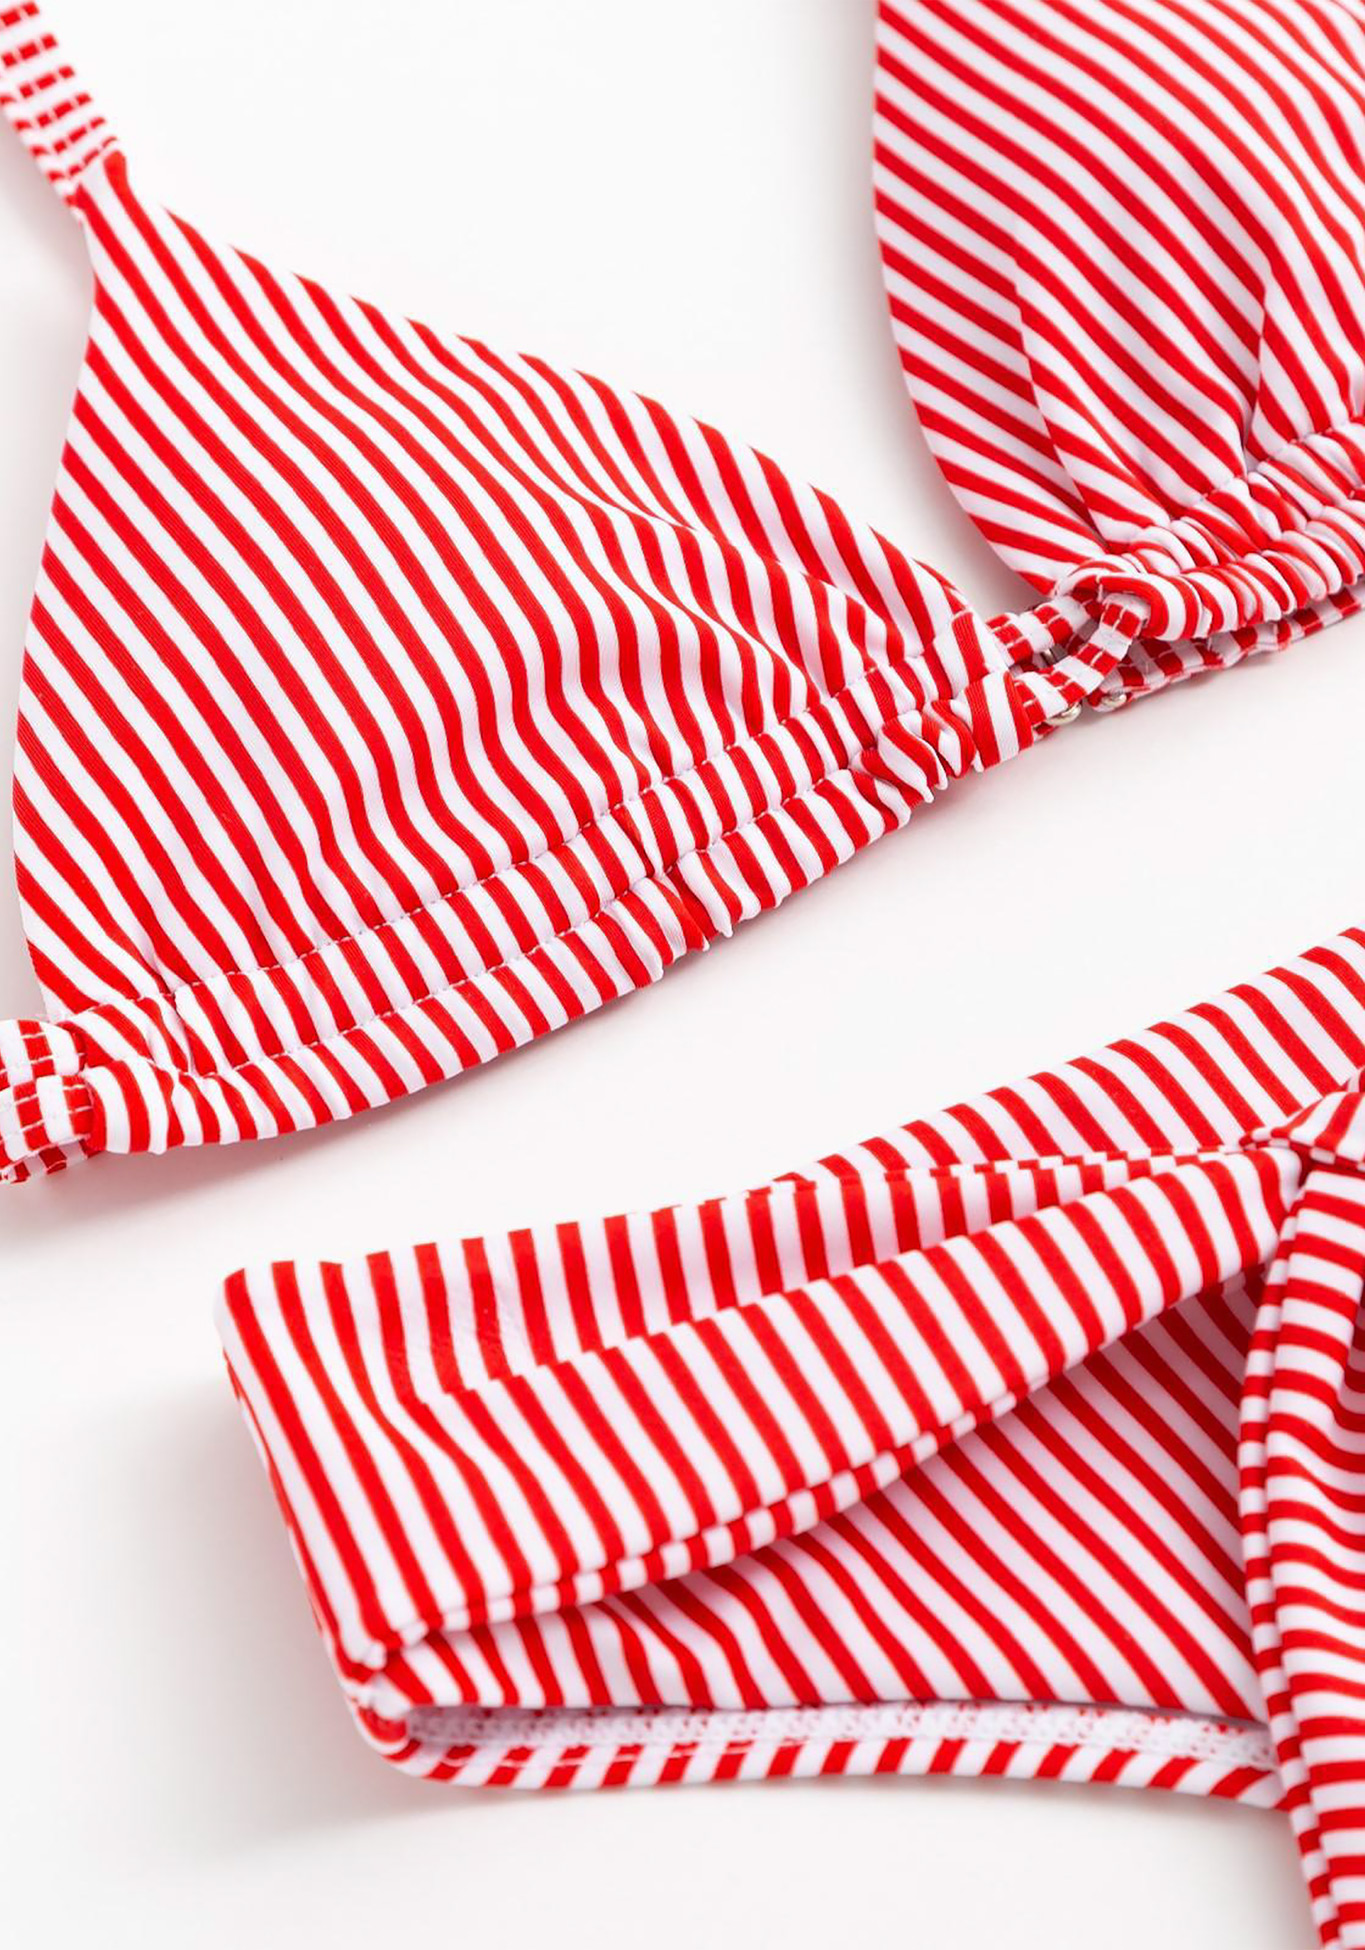 Купальник раздельный "MINAKU Stripe", размер 46, цвет черно-белый - фото 9